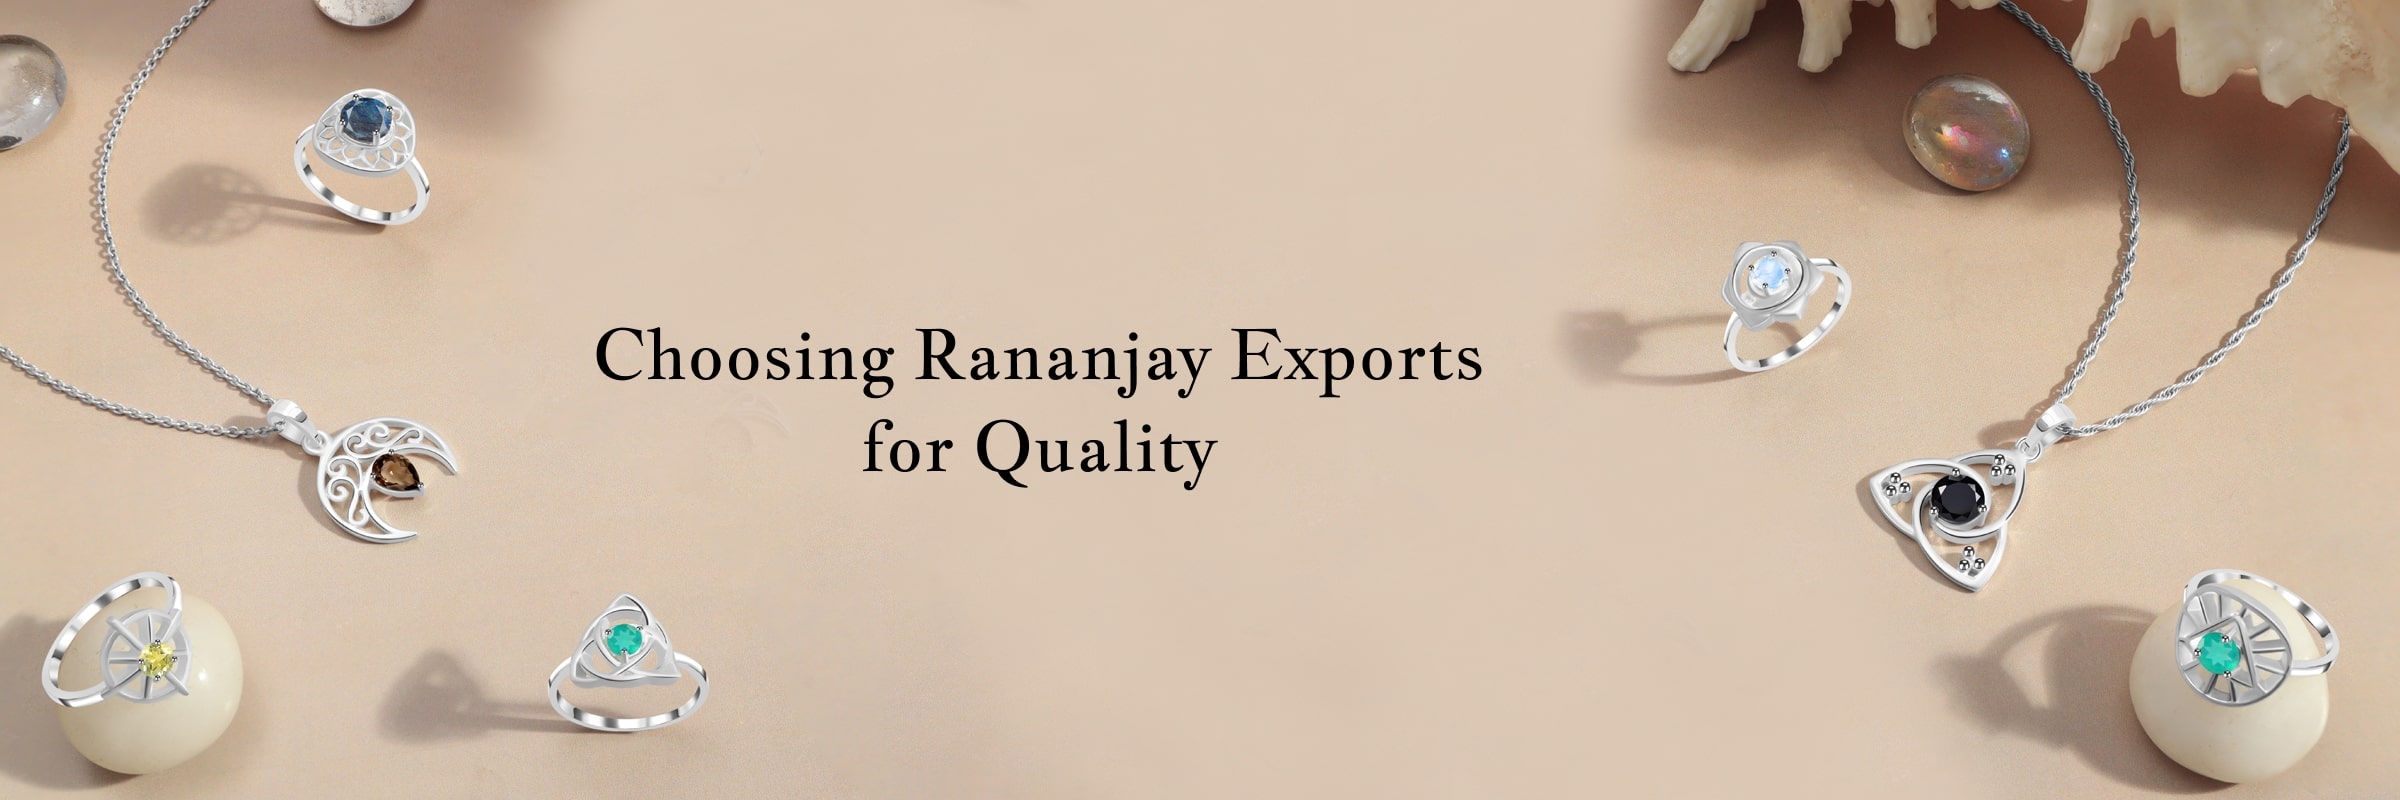 Reason why you should choose Rananjay exports